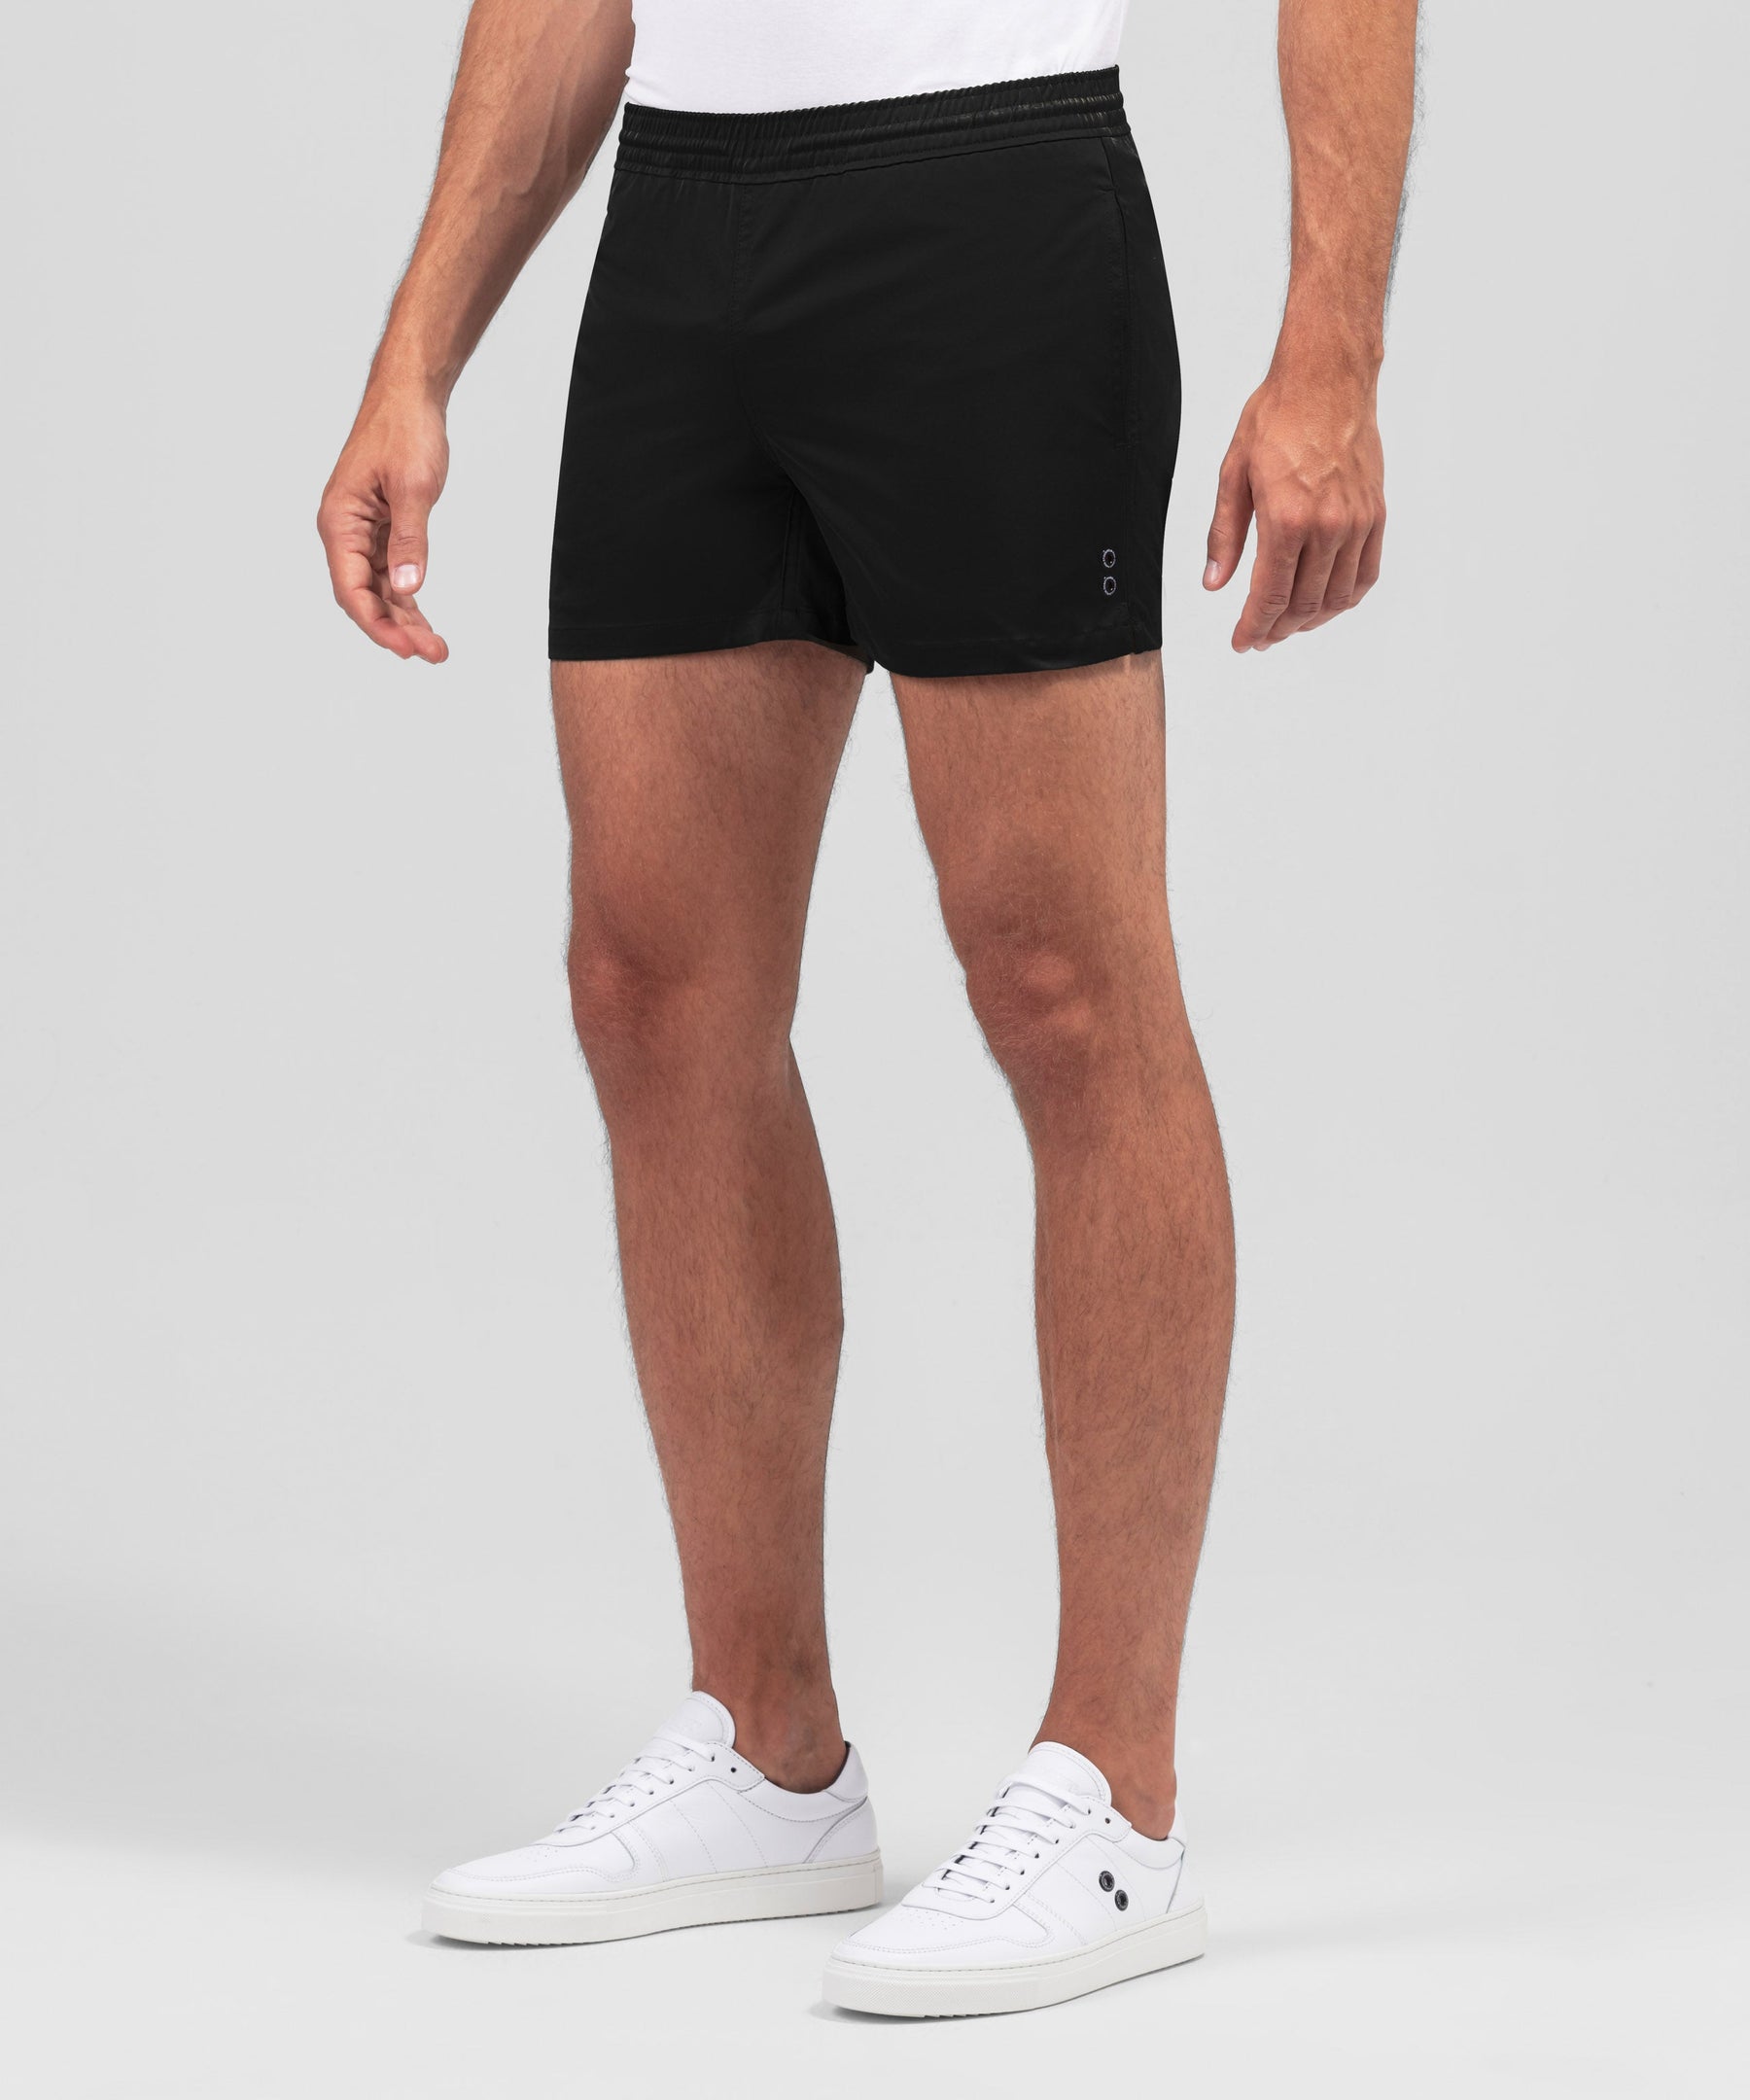 Exerciser Shorts: Black